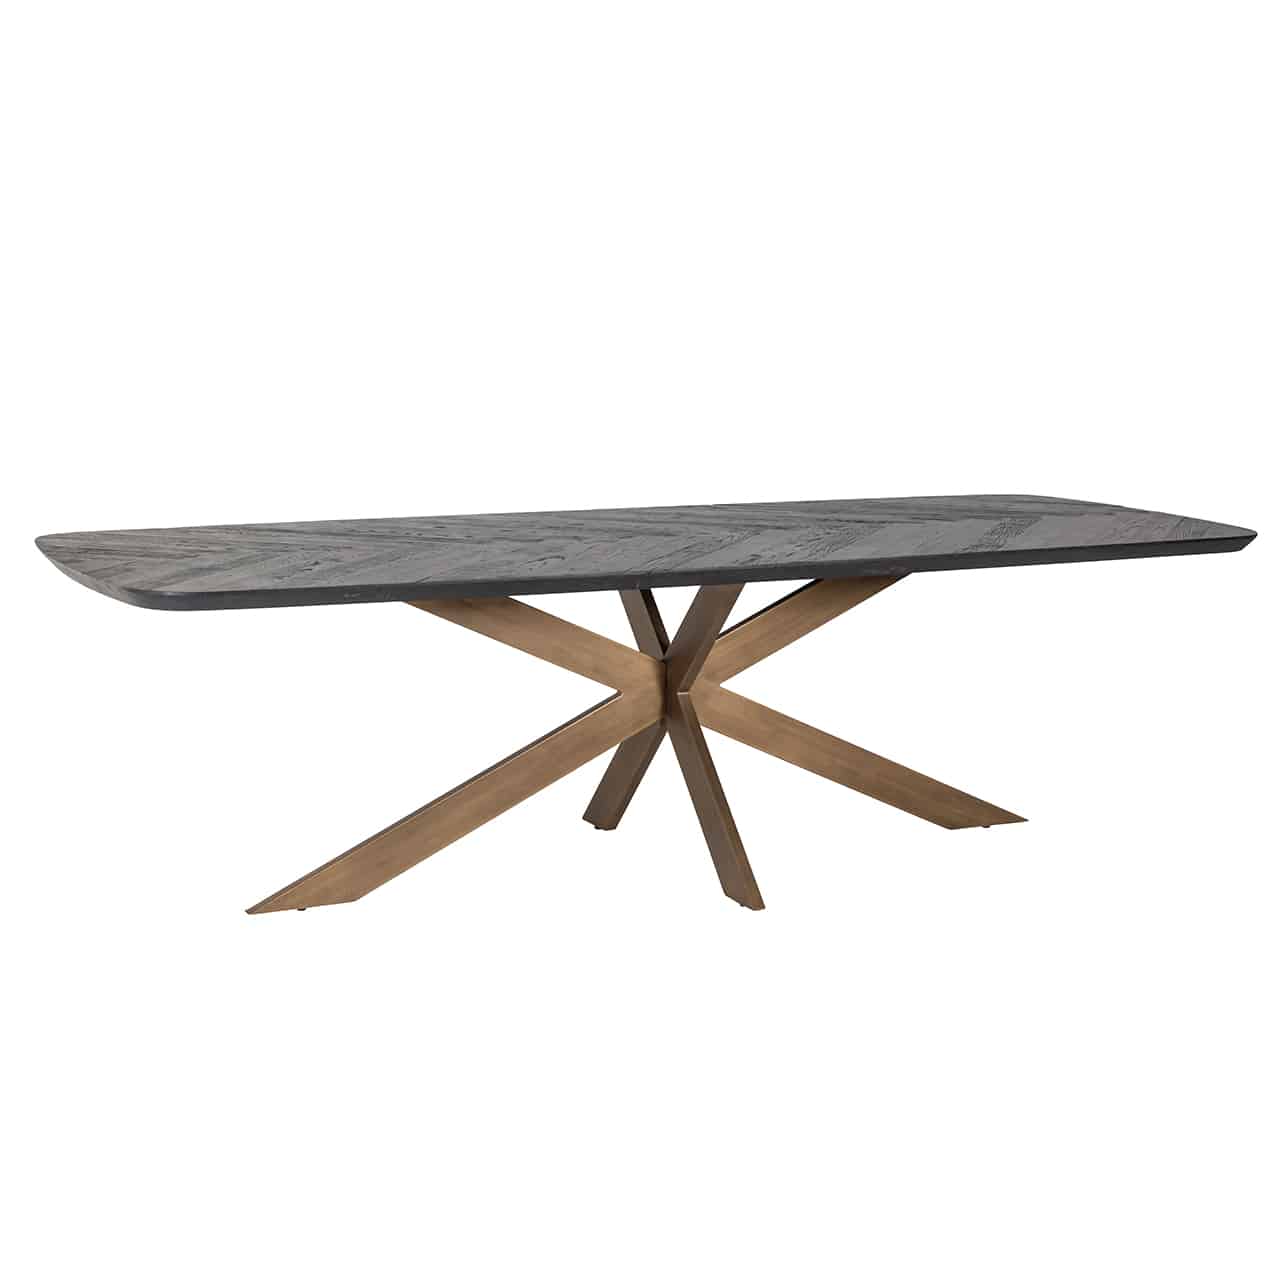 Esstisch mit einem Metallgestell aus sternförmig angeordneten goldenen Planken; darauf eine quadratische Tischplatte mit abgerundeten Ecken. aus recyceltem Holz.